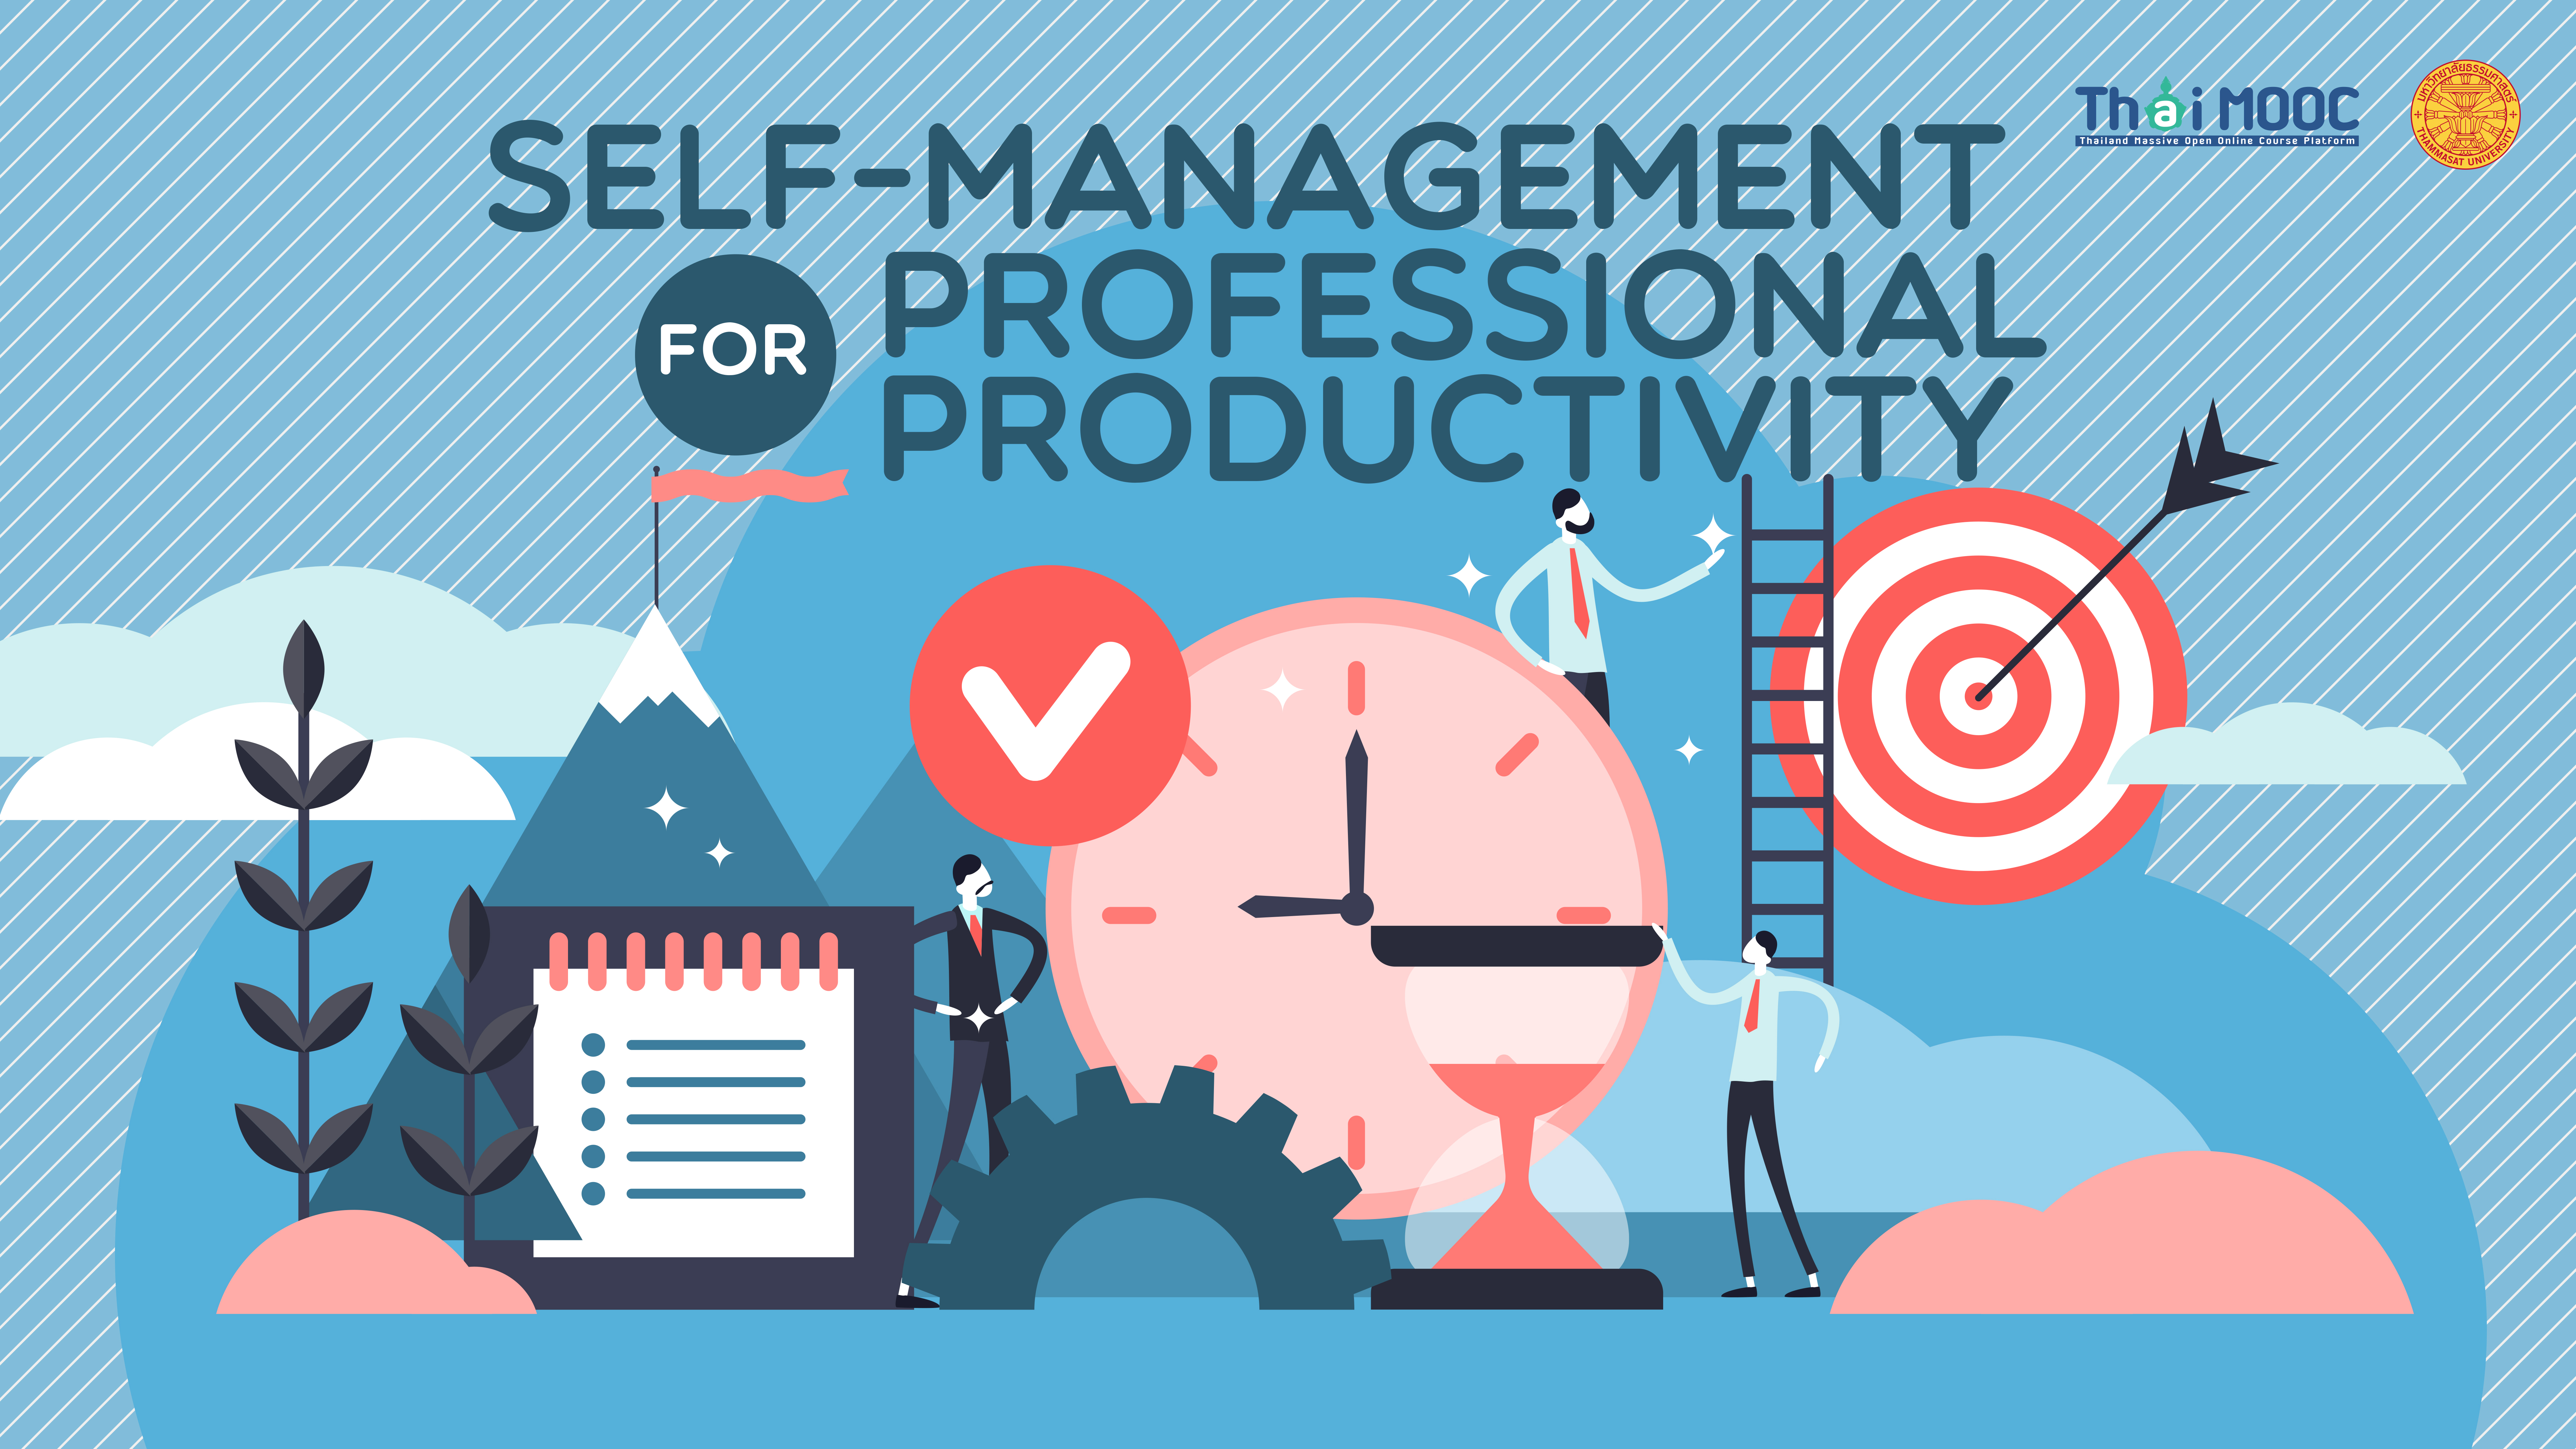 การจัดการตนเองสู่ประสิทธิภาพอย่างมืออาชีพ | Self-Management for professional productivity 004